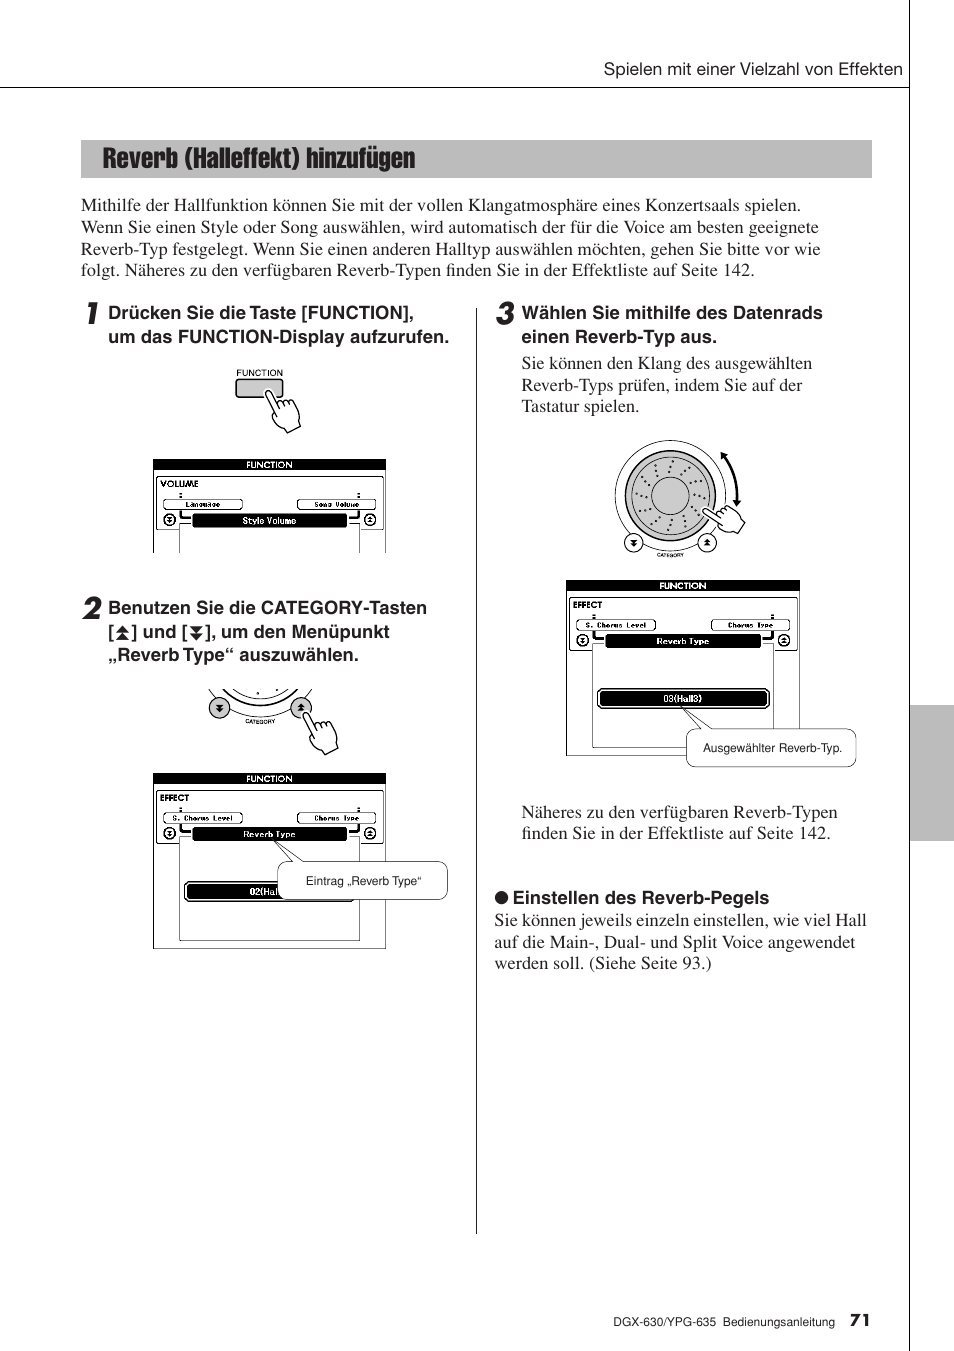 Reverb (halleffekt) hinzufügen | Yamaha DGX-630 Benutzerhandbuch | Seite 71 / 160